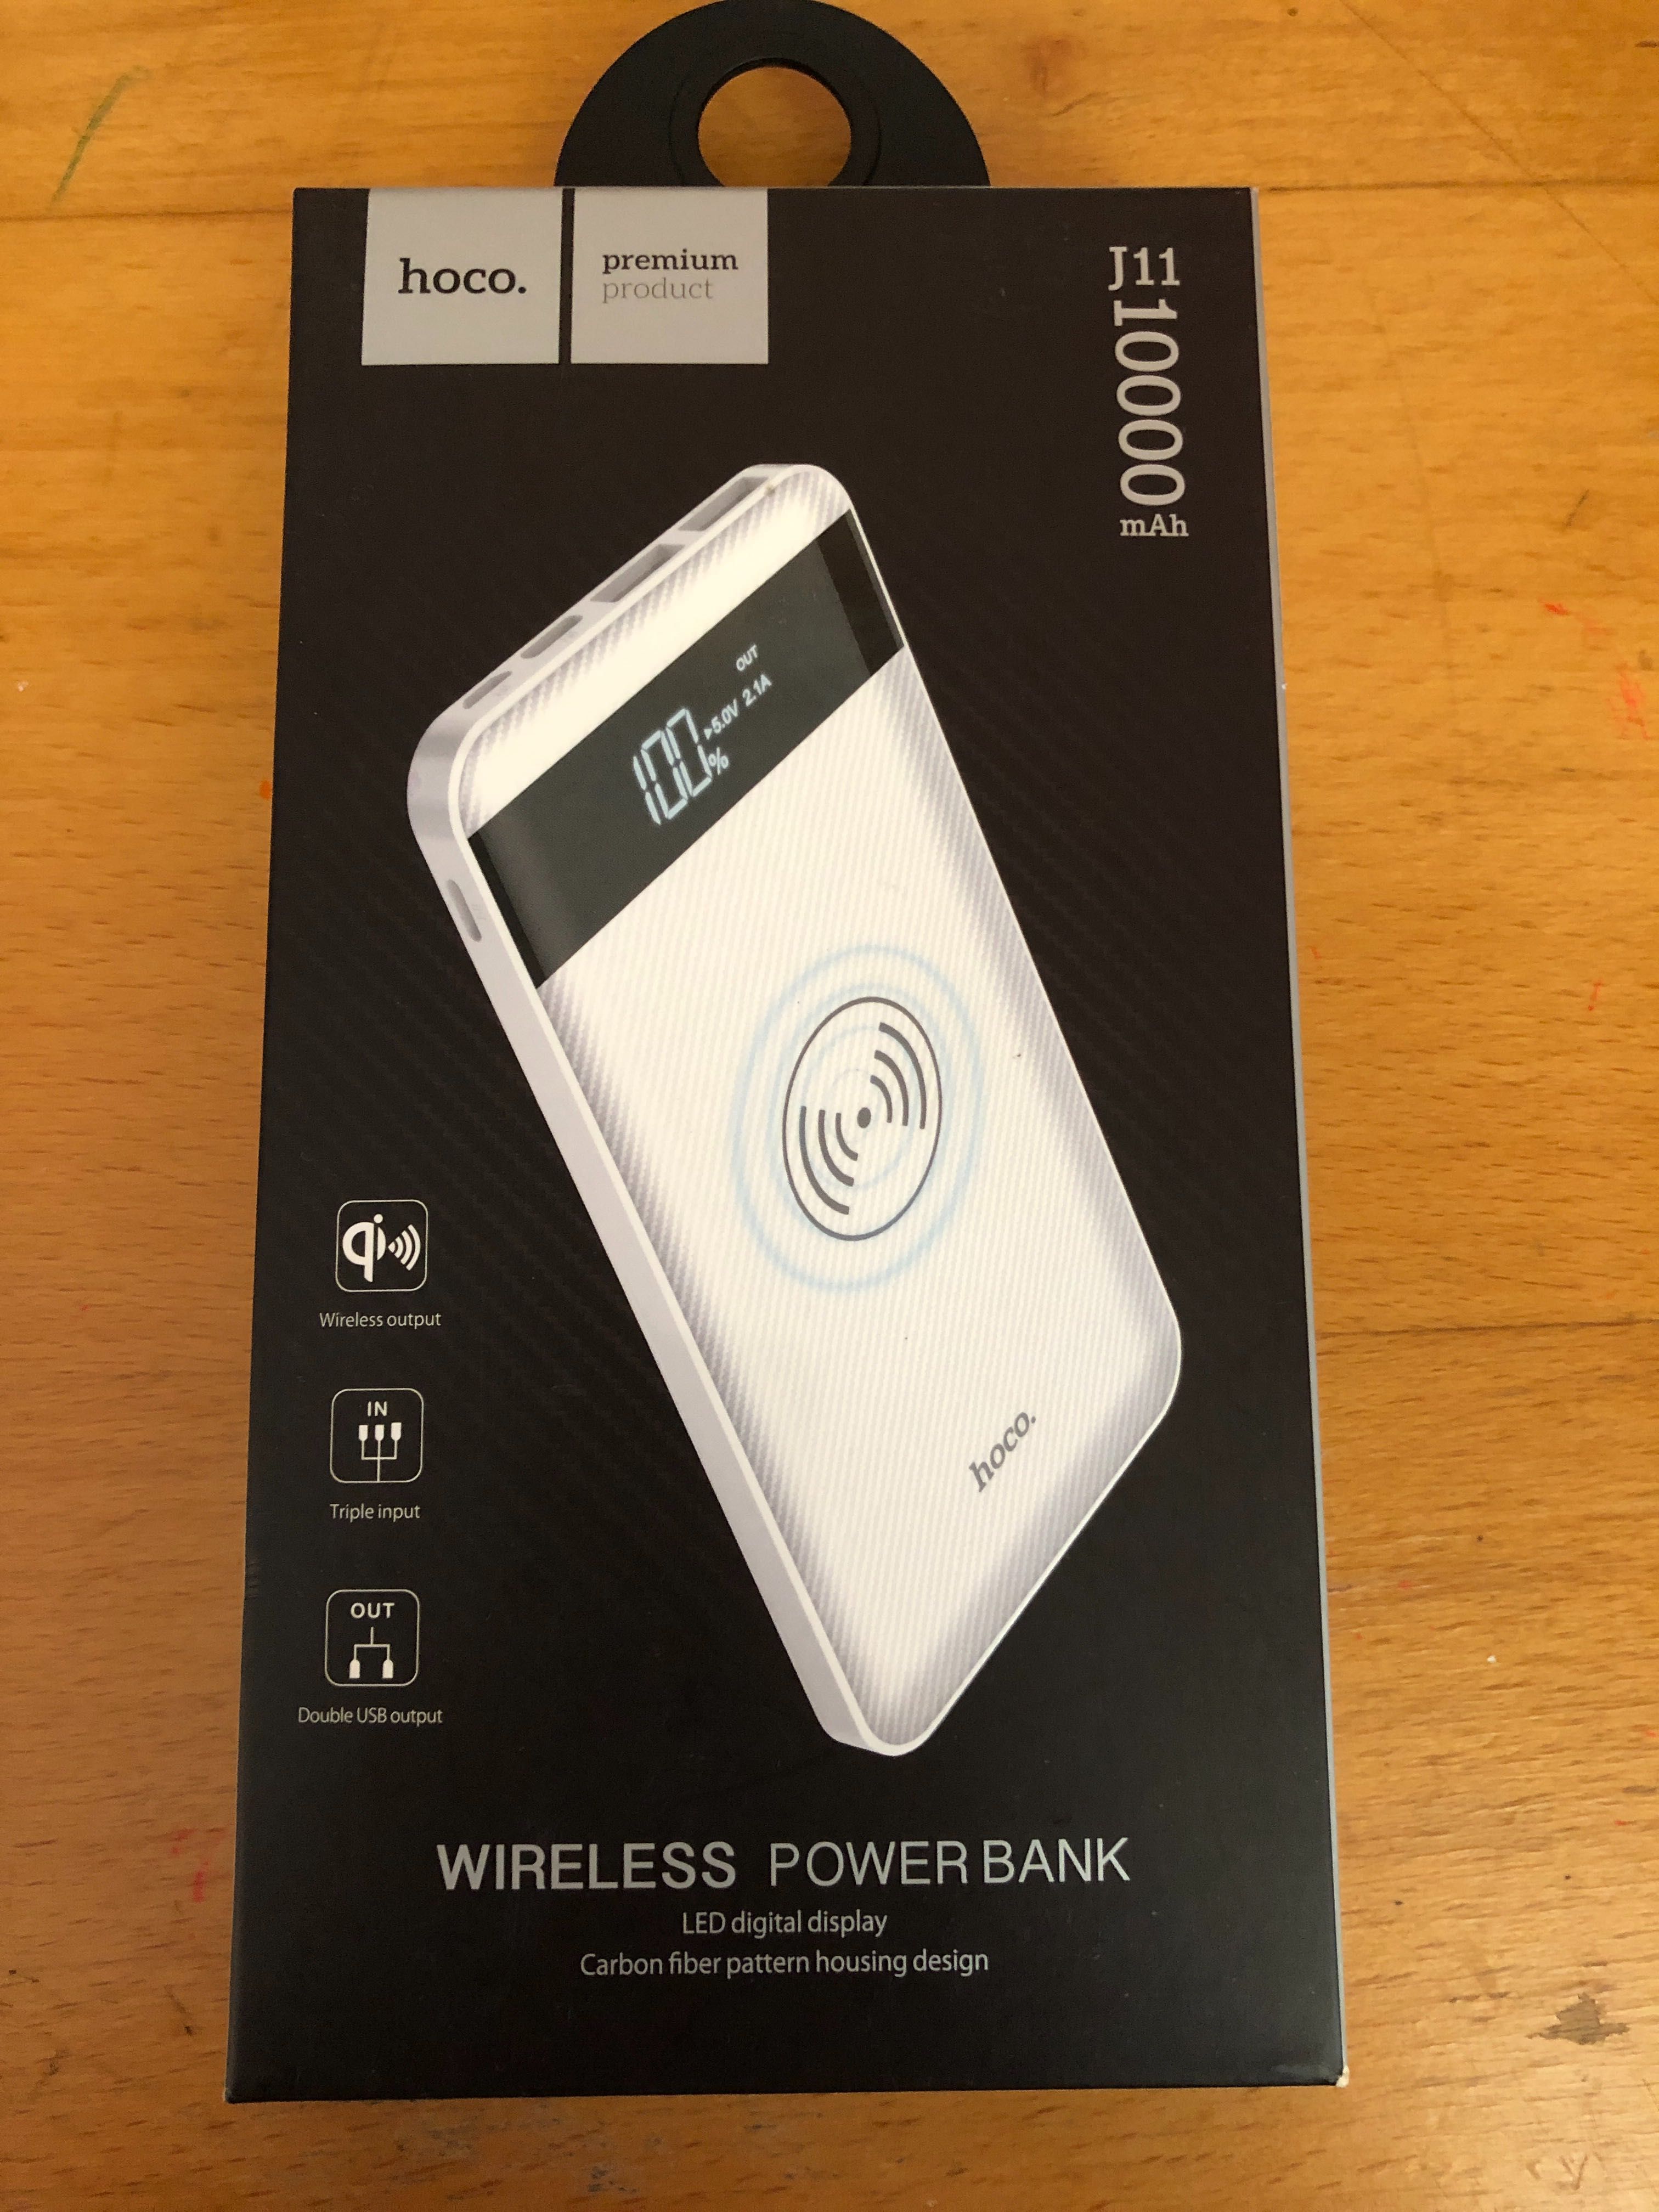 Продажу Hoco wireless power bank